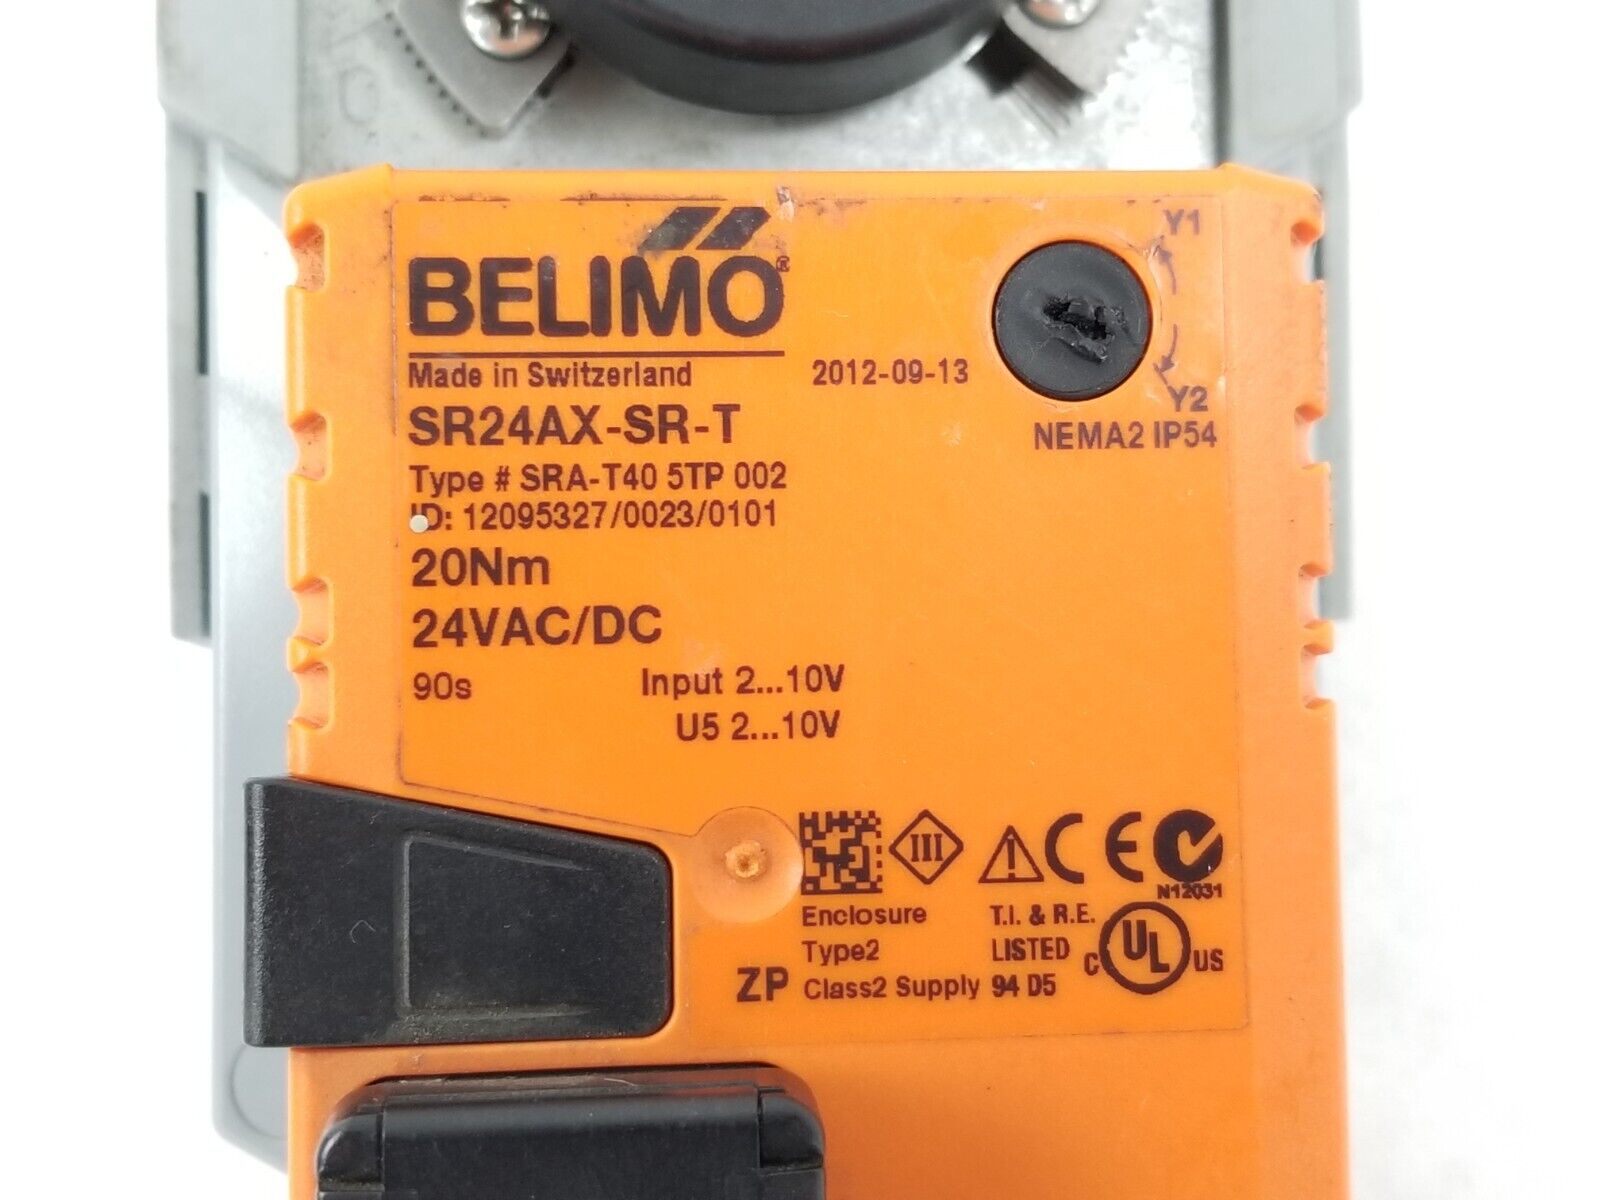 Belimo SR24AX-SR-T SRA-T40 20Nm 24VAC/DC NEMA2 Industrial Actuator